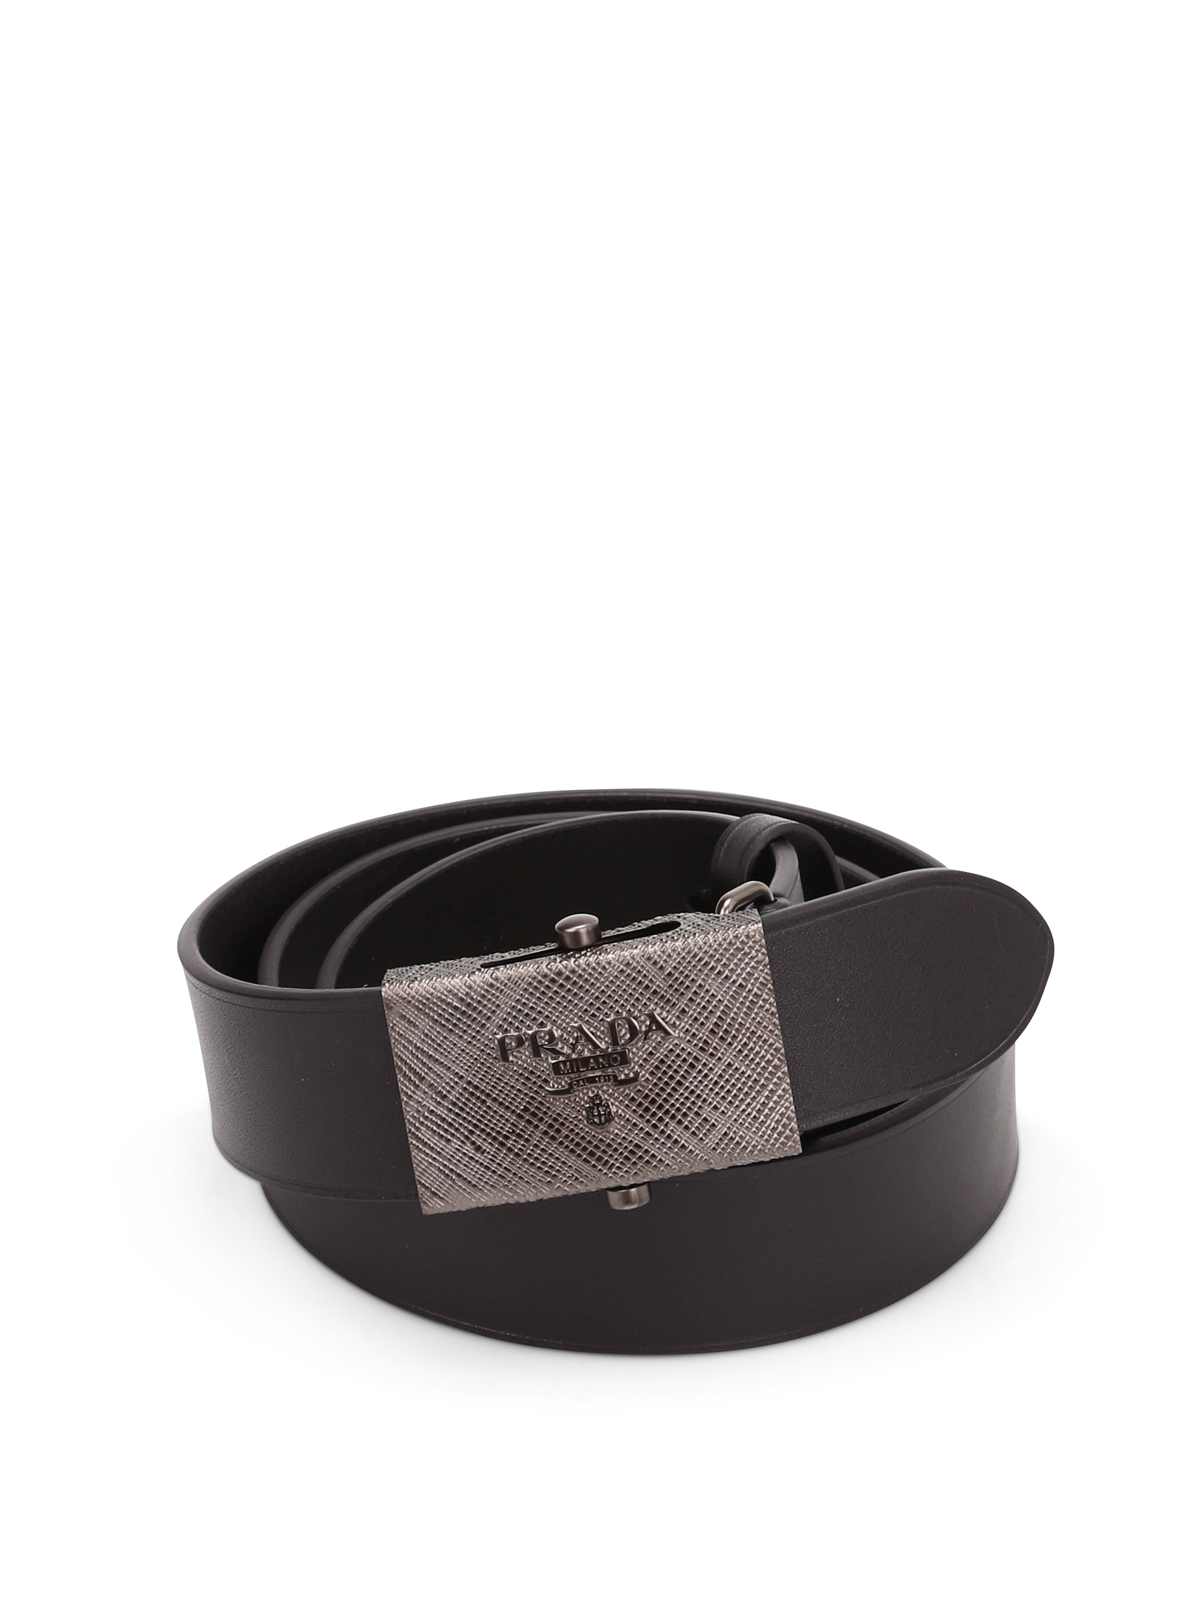 Cinturones Prada - Cinturón Negro Para Hombre - 2CM005908F000207